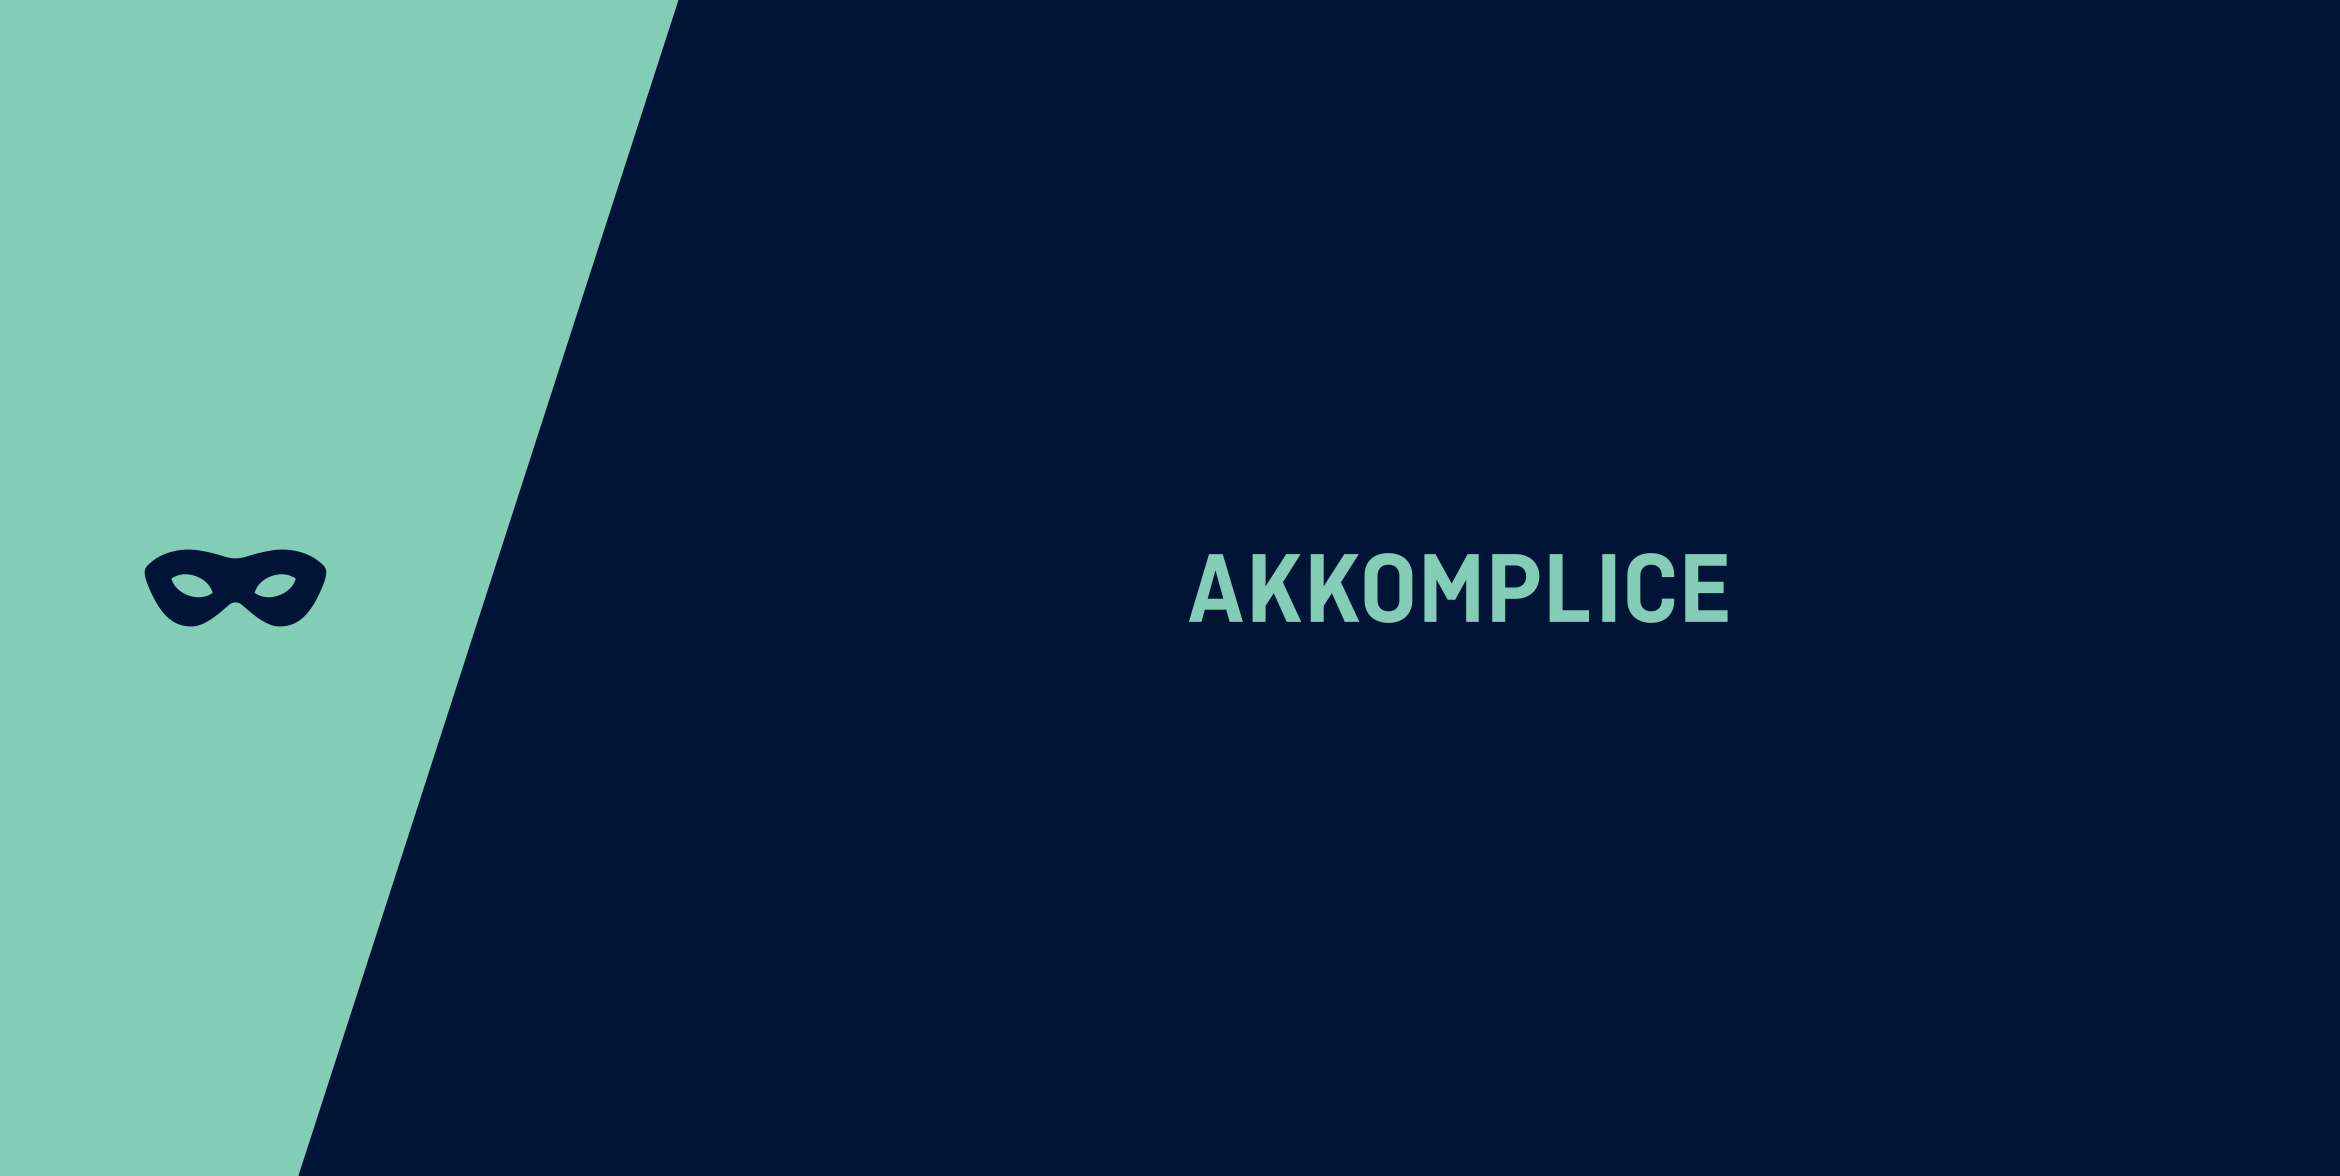 Akkomplice_brandmark4